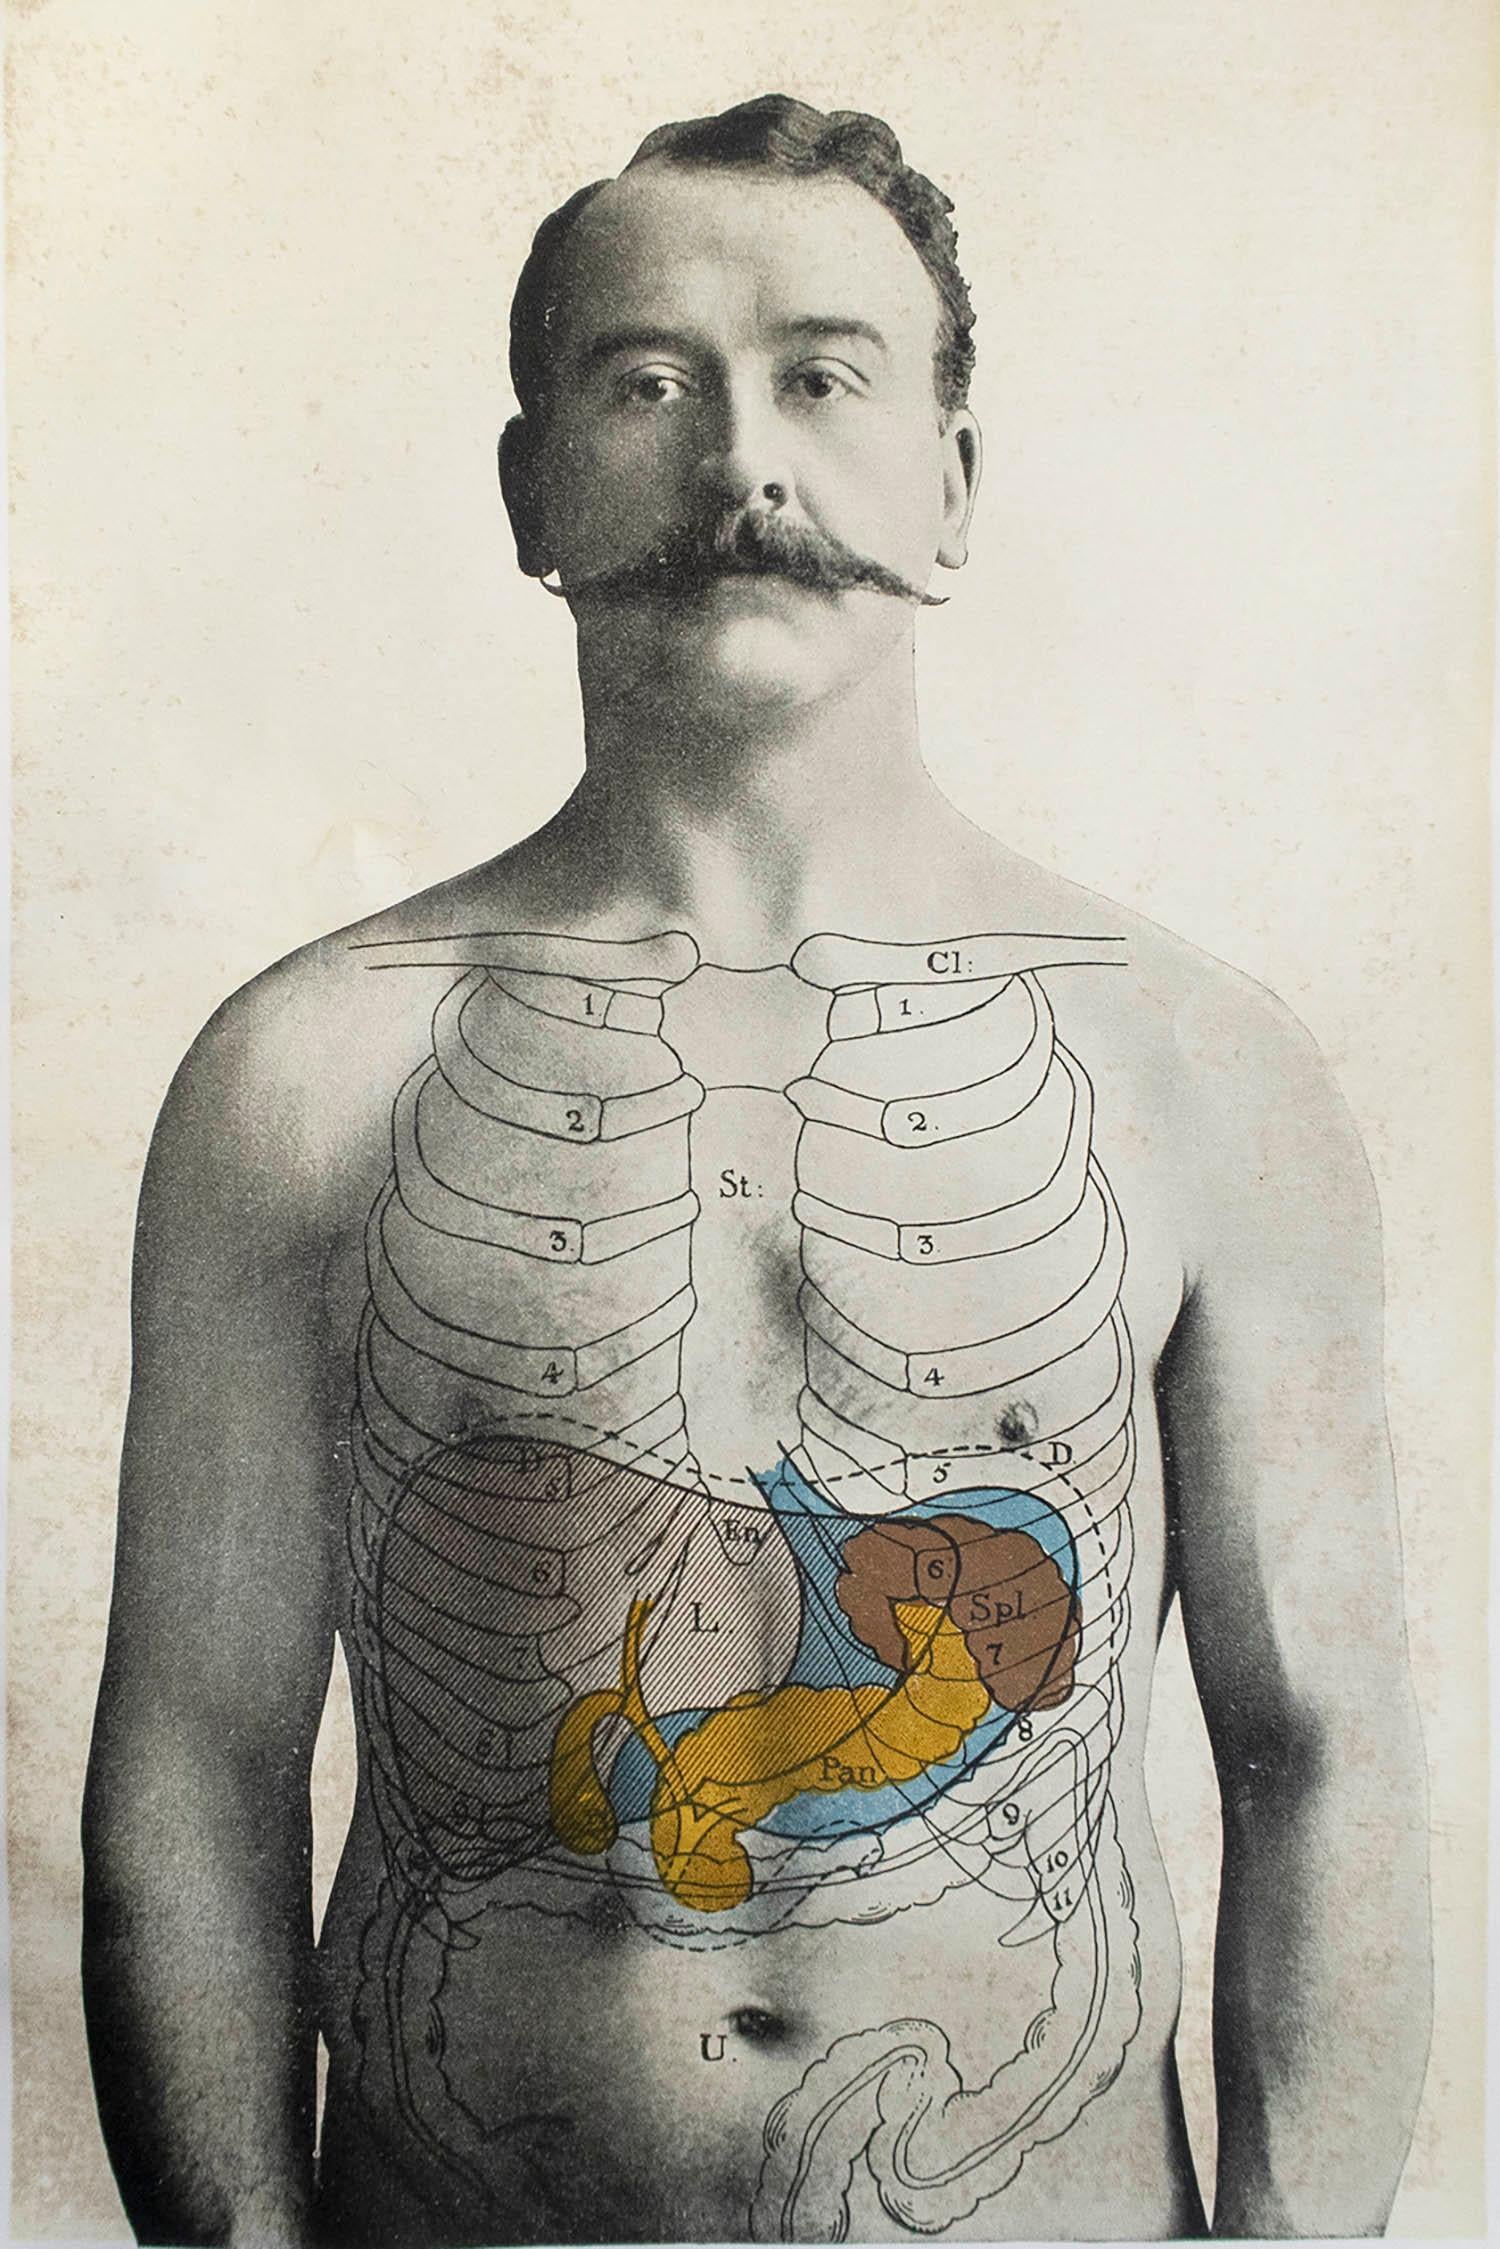 Großartiges Bild von medizinischem Interesse.

Ungerahmt.

Veröffentlicht, um 1900.





.